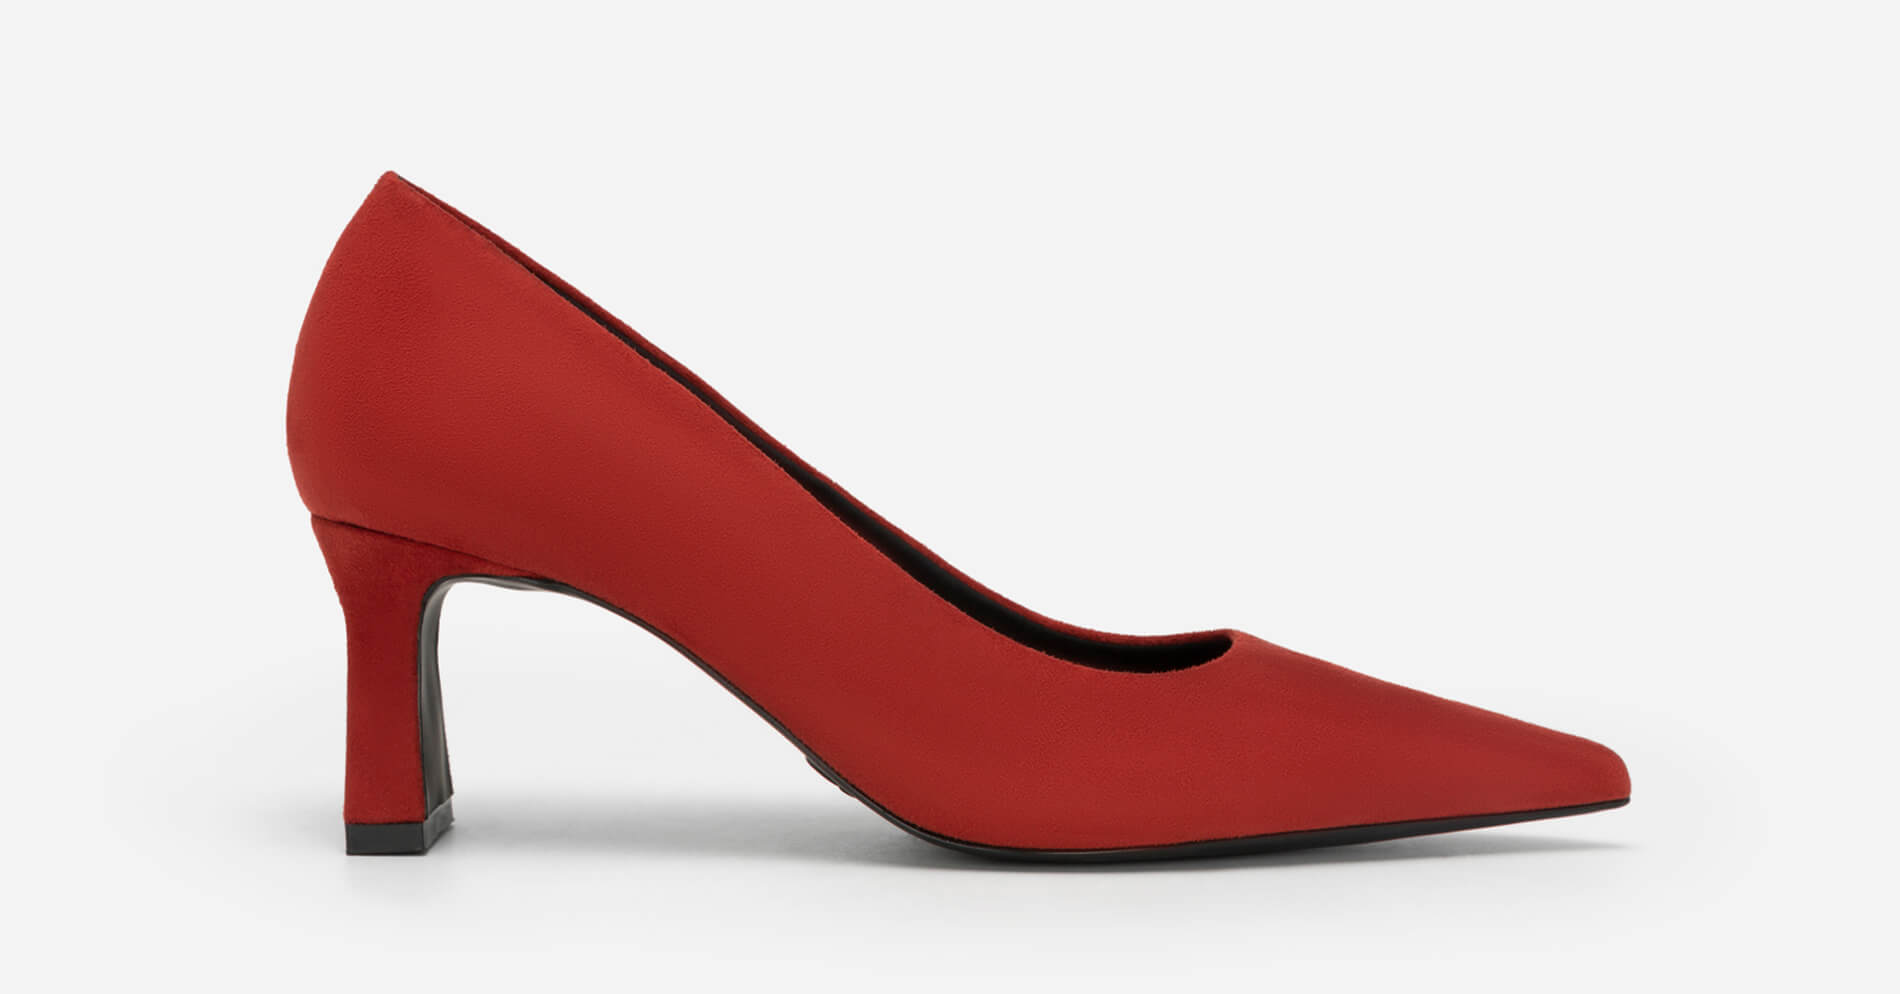 Giày bít mũi nhọn spool block heel - BMN 0542 - Màu đỏ đậm